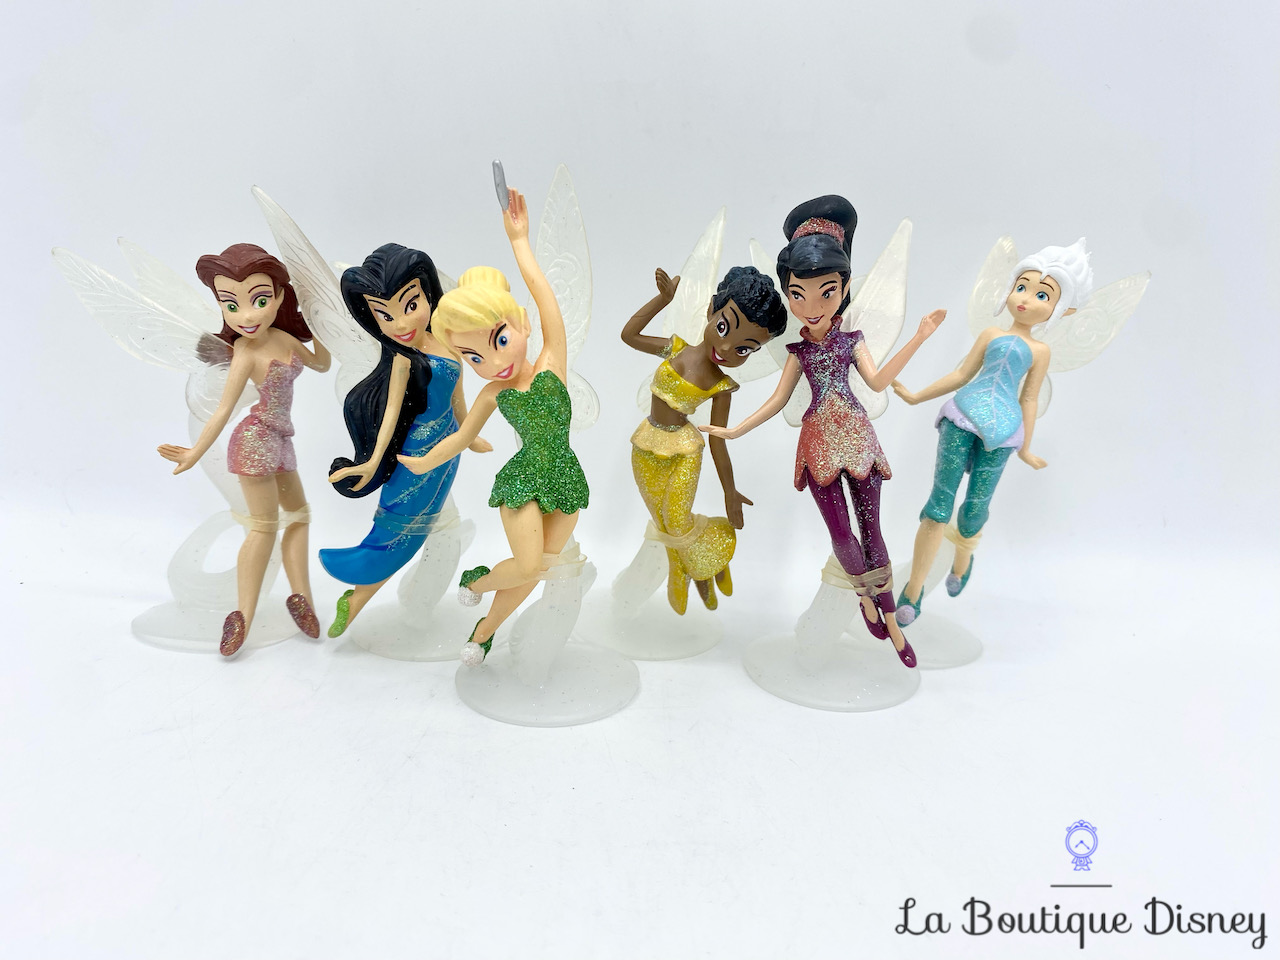 Statuette Fée clochette spirit of the season Figurines Disney Collection  -4046065 dans Disney sur Collection figurines